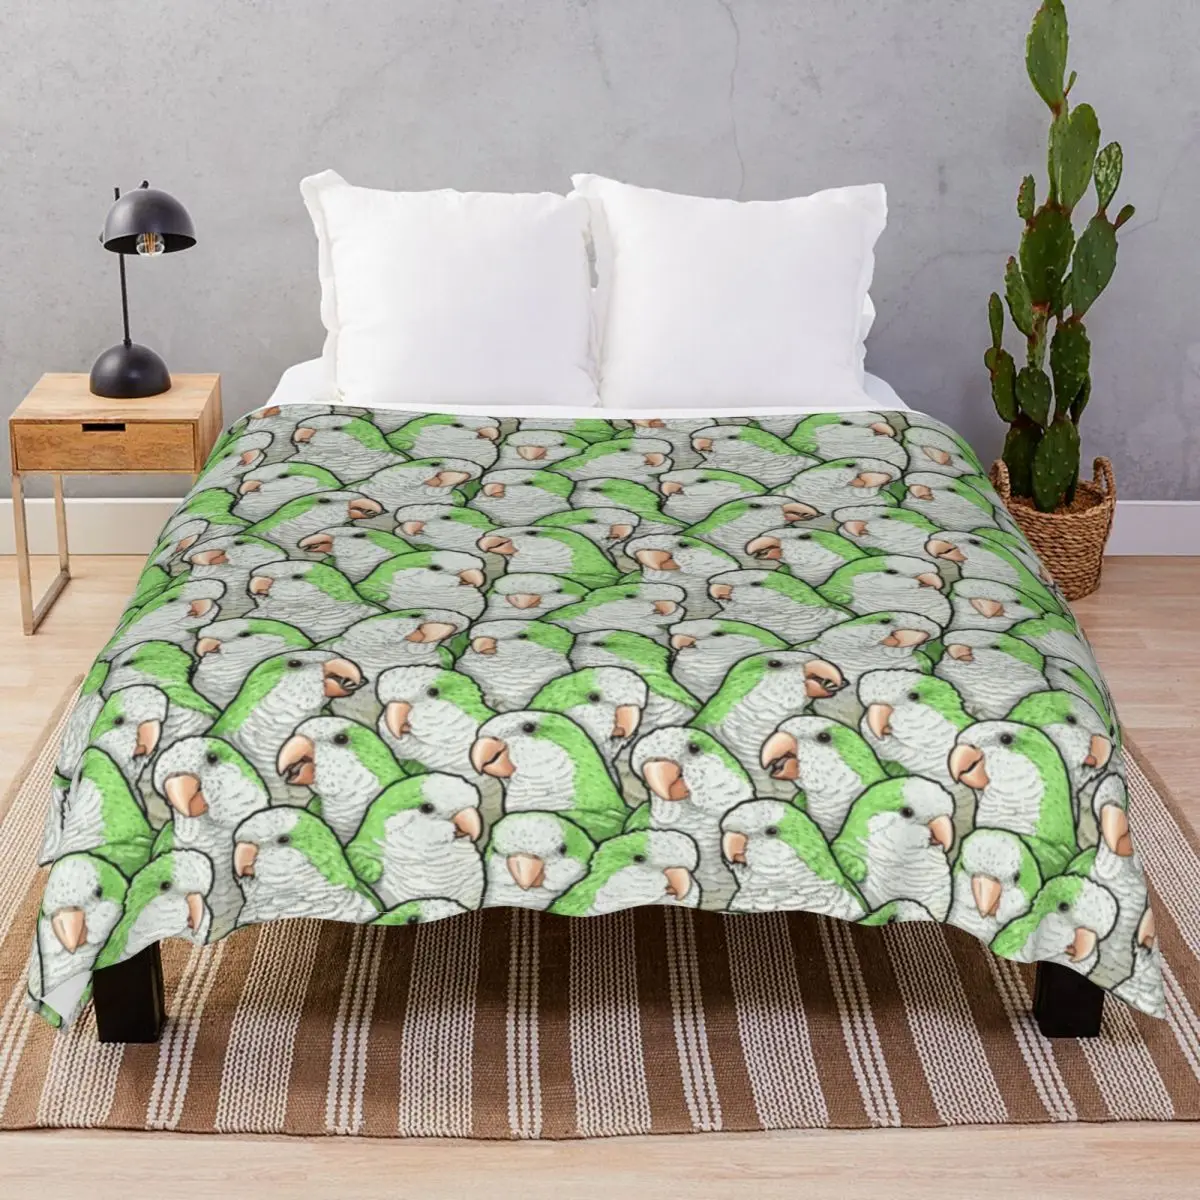 Green Quaker Parrots Blanket Velvet Textile Decor Ultra-Soft Unisex Throw Blankets for Bedding Home Couch Travel Cinema